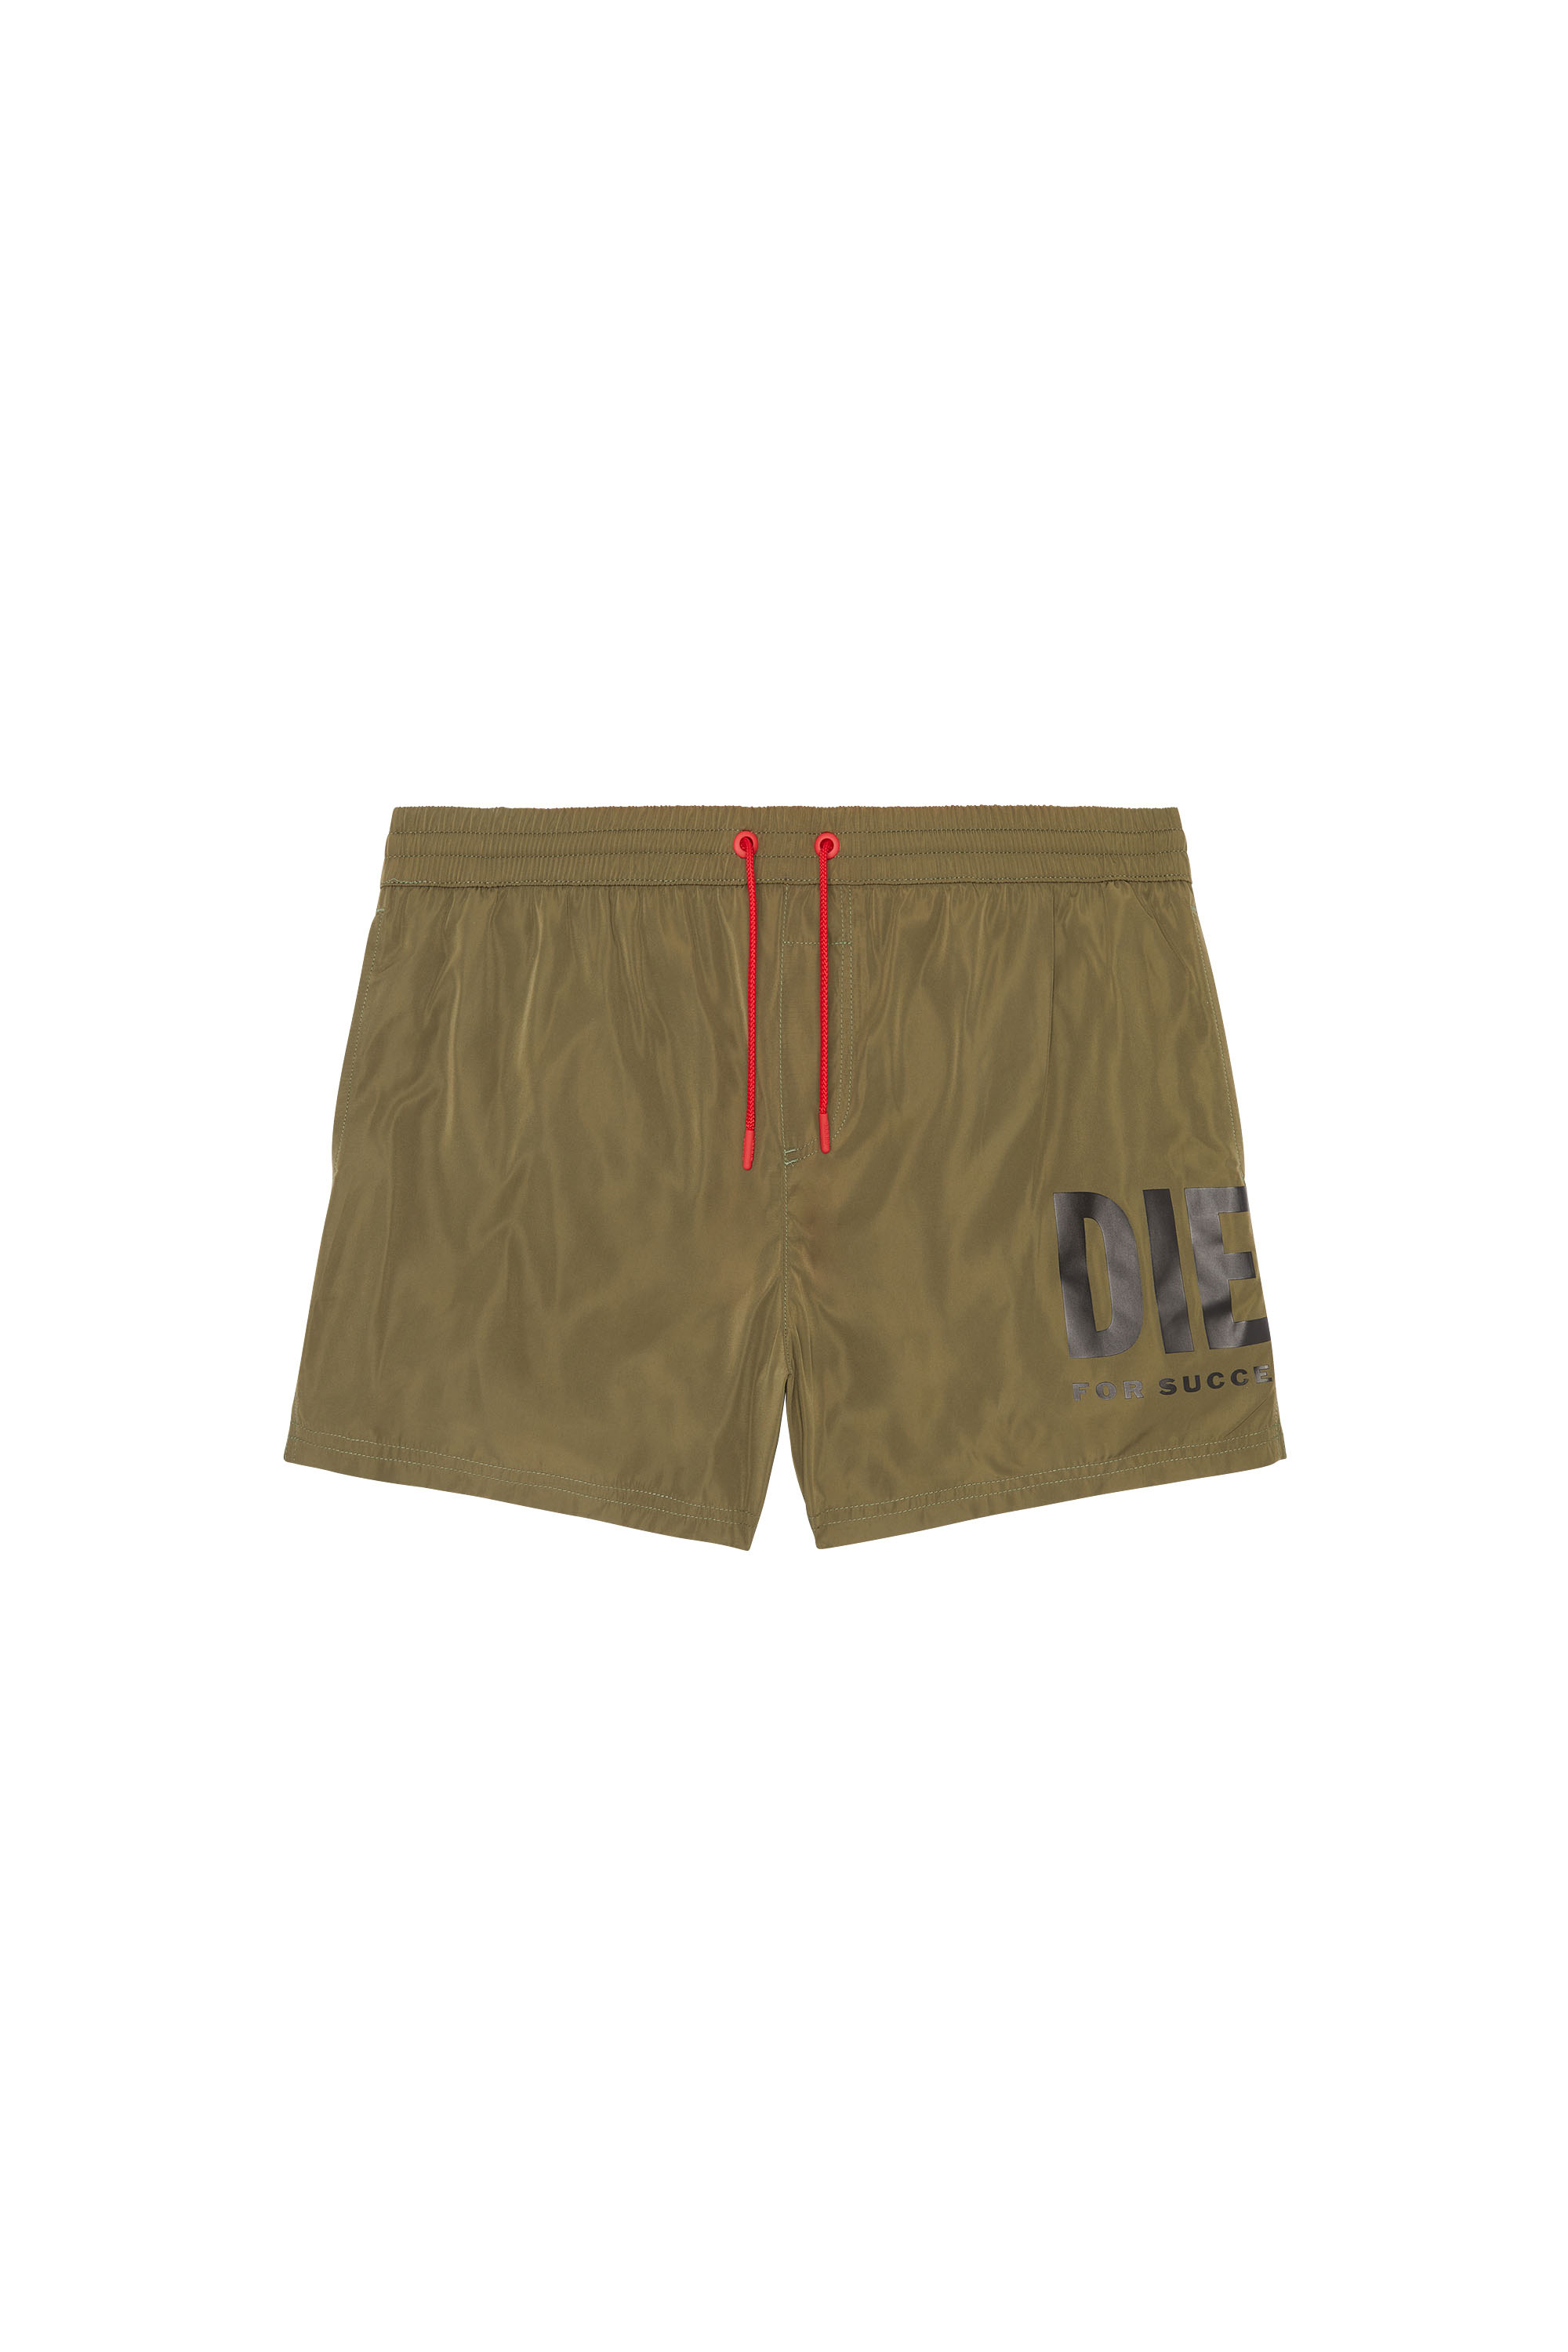 Diesel - Mittellange Bade-Shorts mit Maxi-Logo - Badeshorts - Herren - Grün